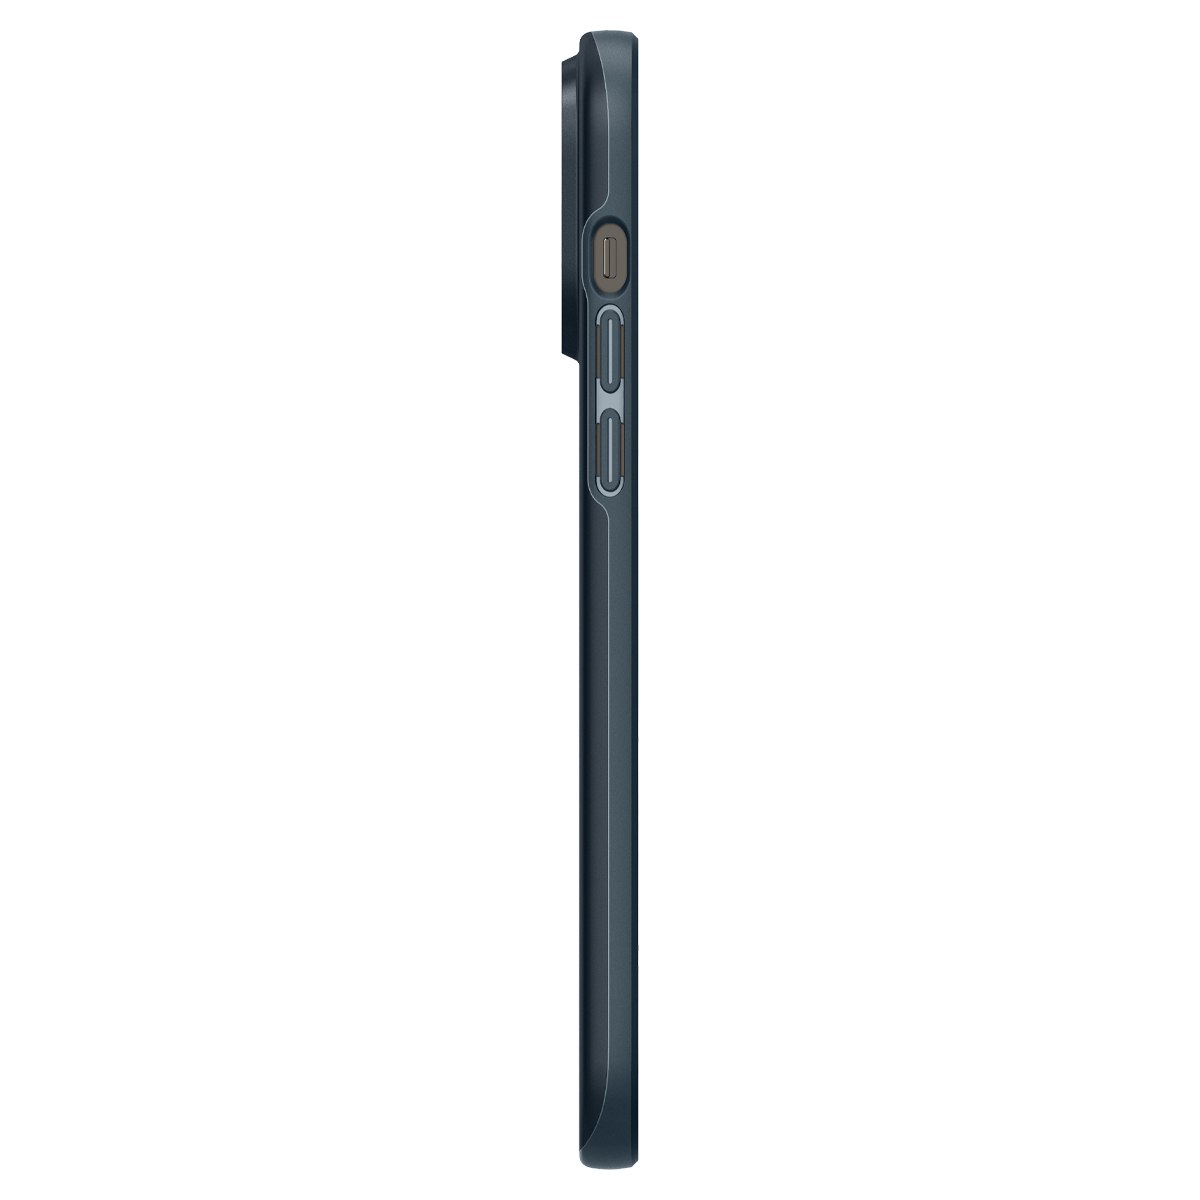 Ốp Lưng dành cho iPhone 14 Pro Max Spigen Thin Fit Case - Hàng Chính Hãng